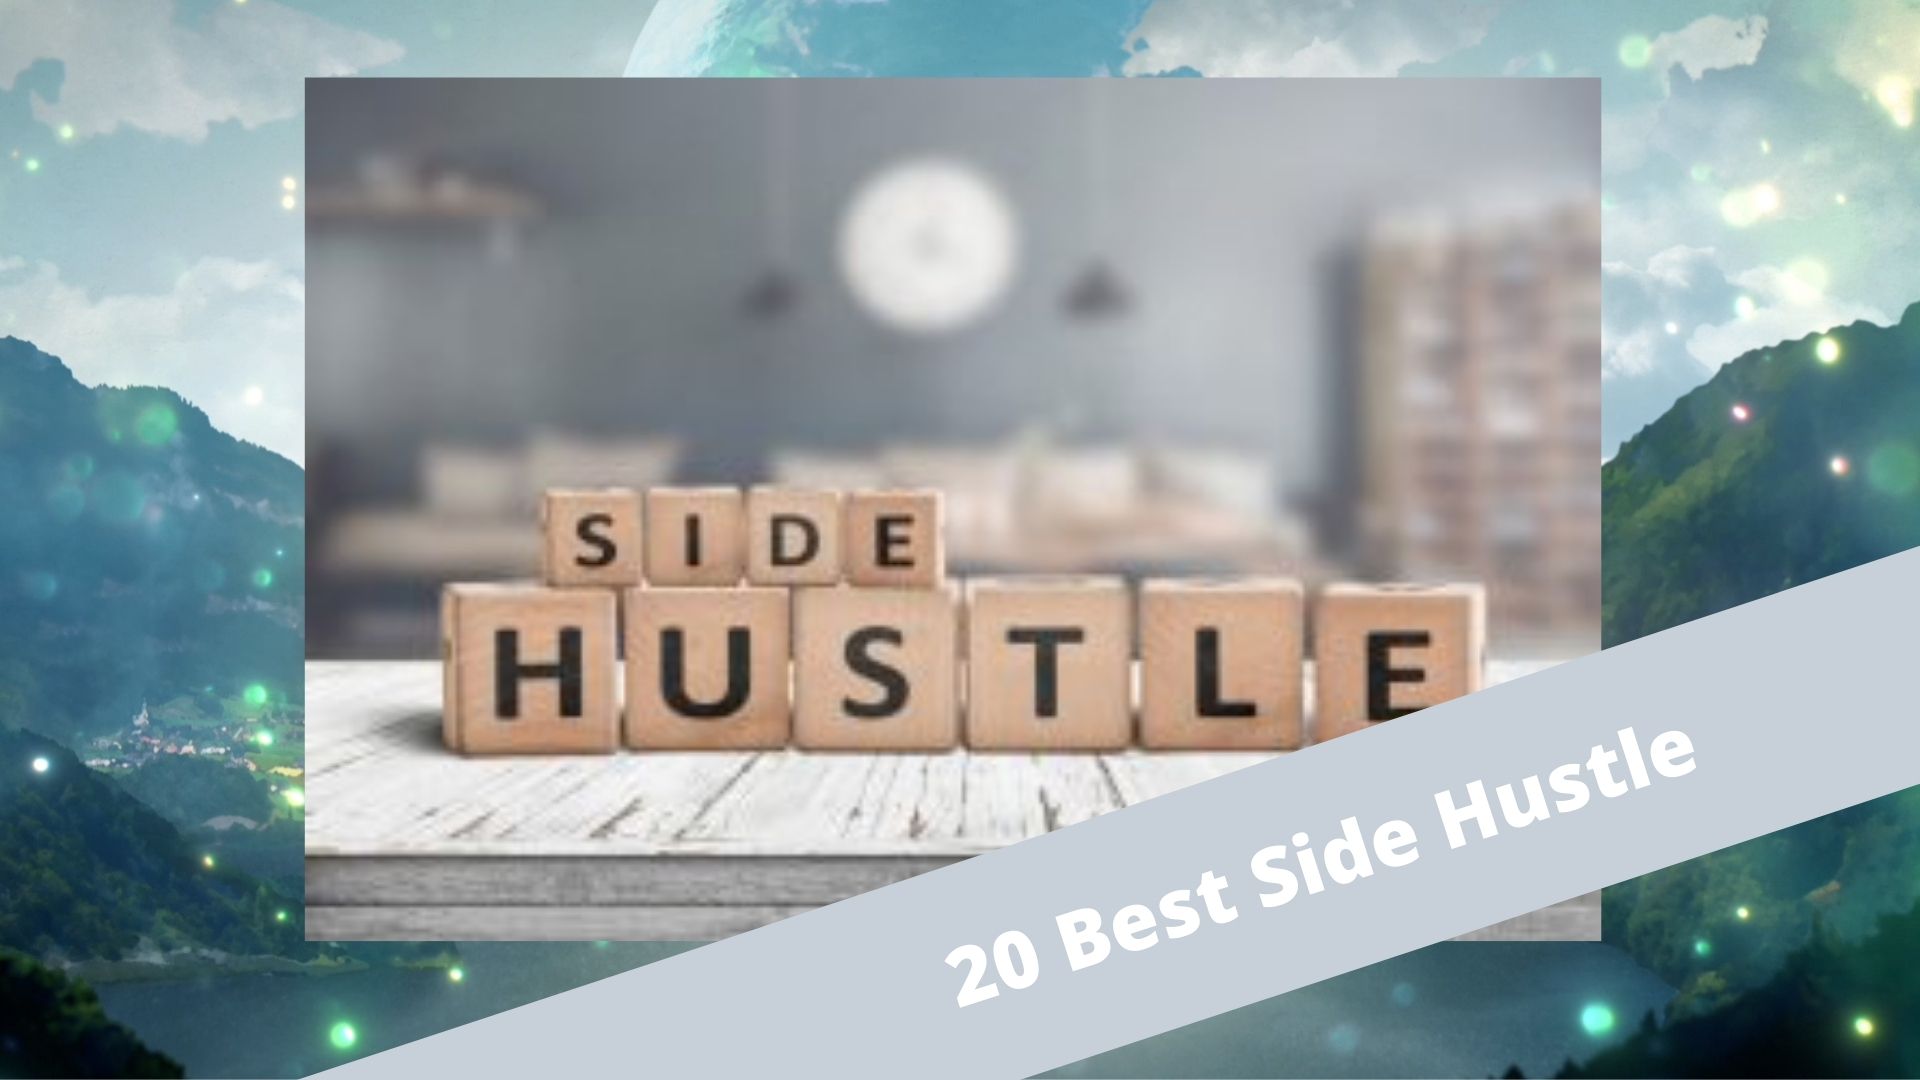 20 Best Side Hustle